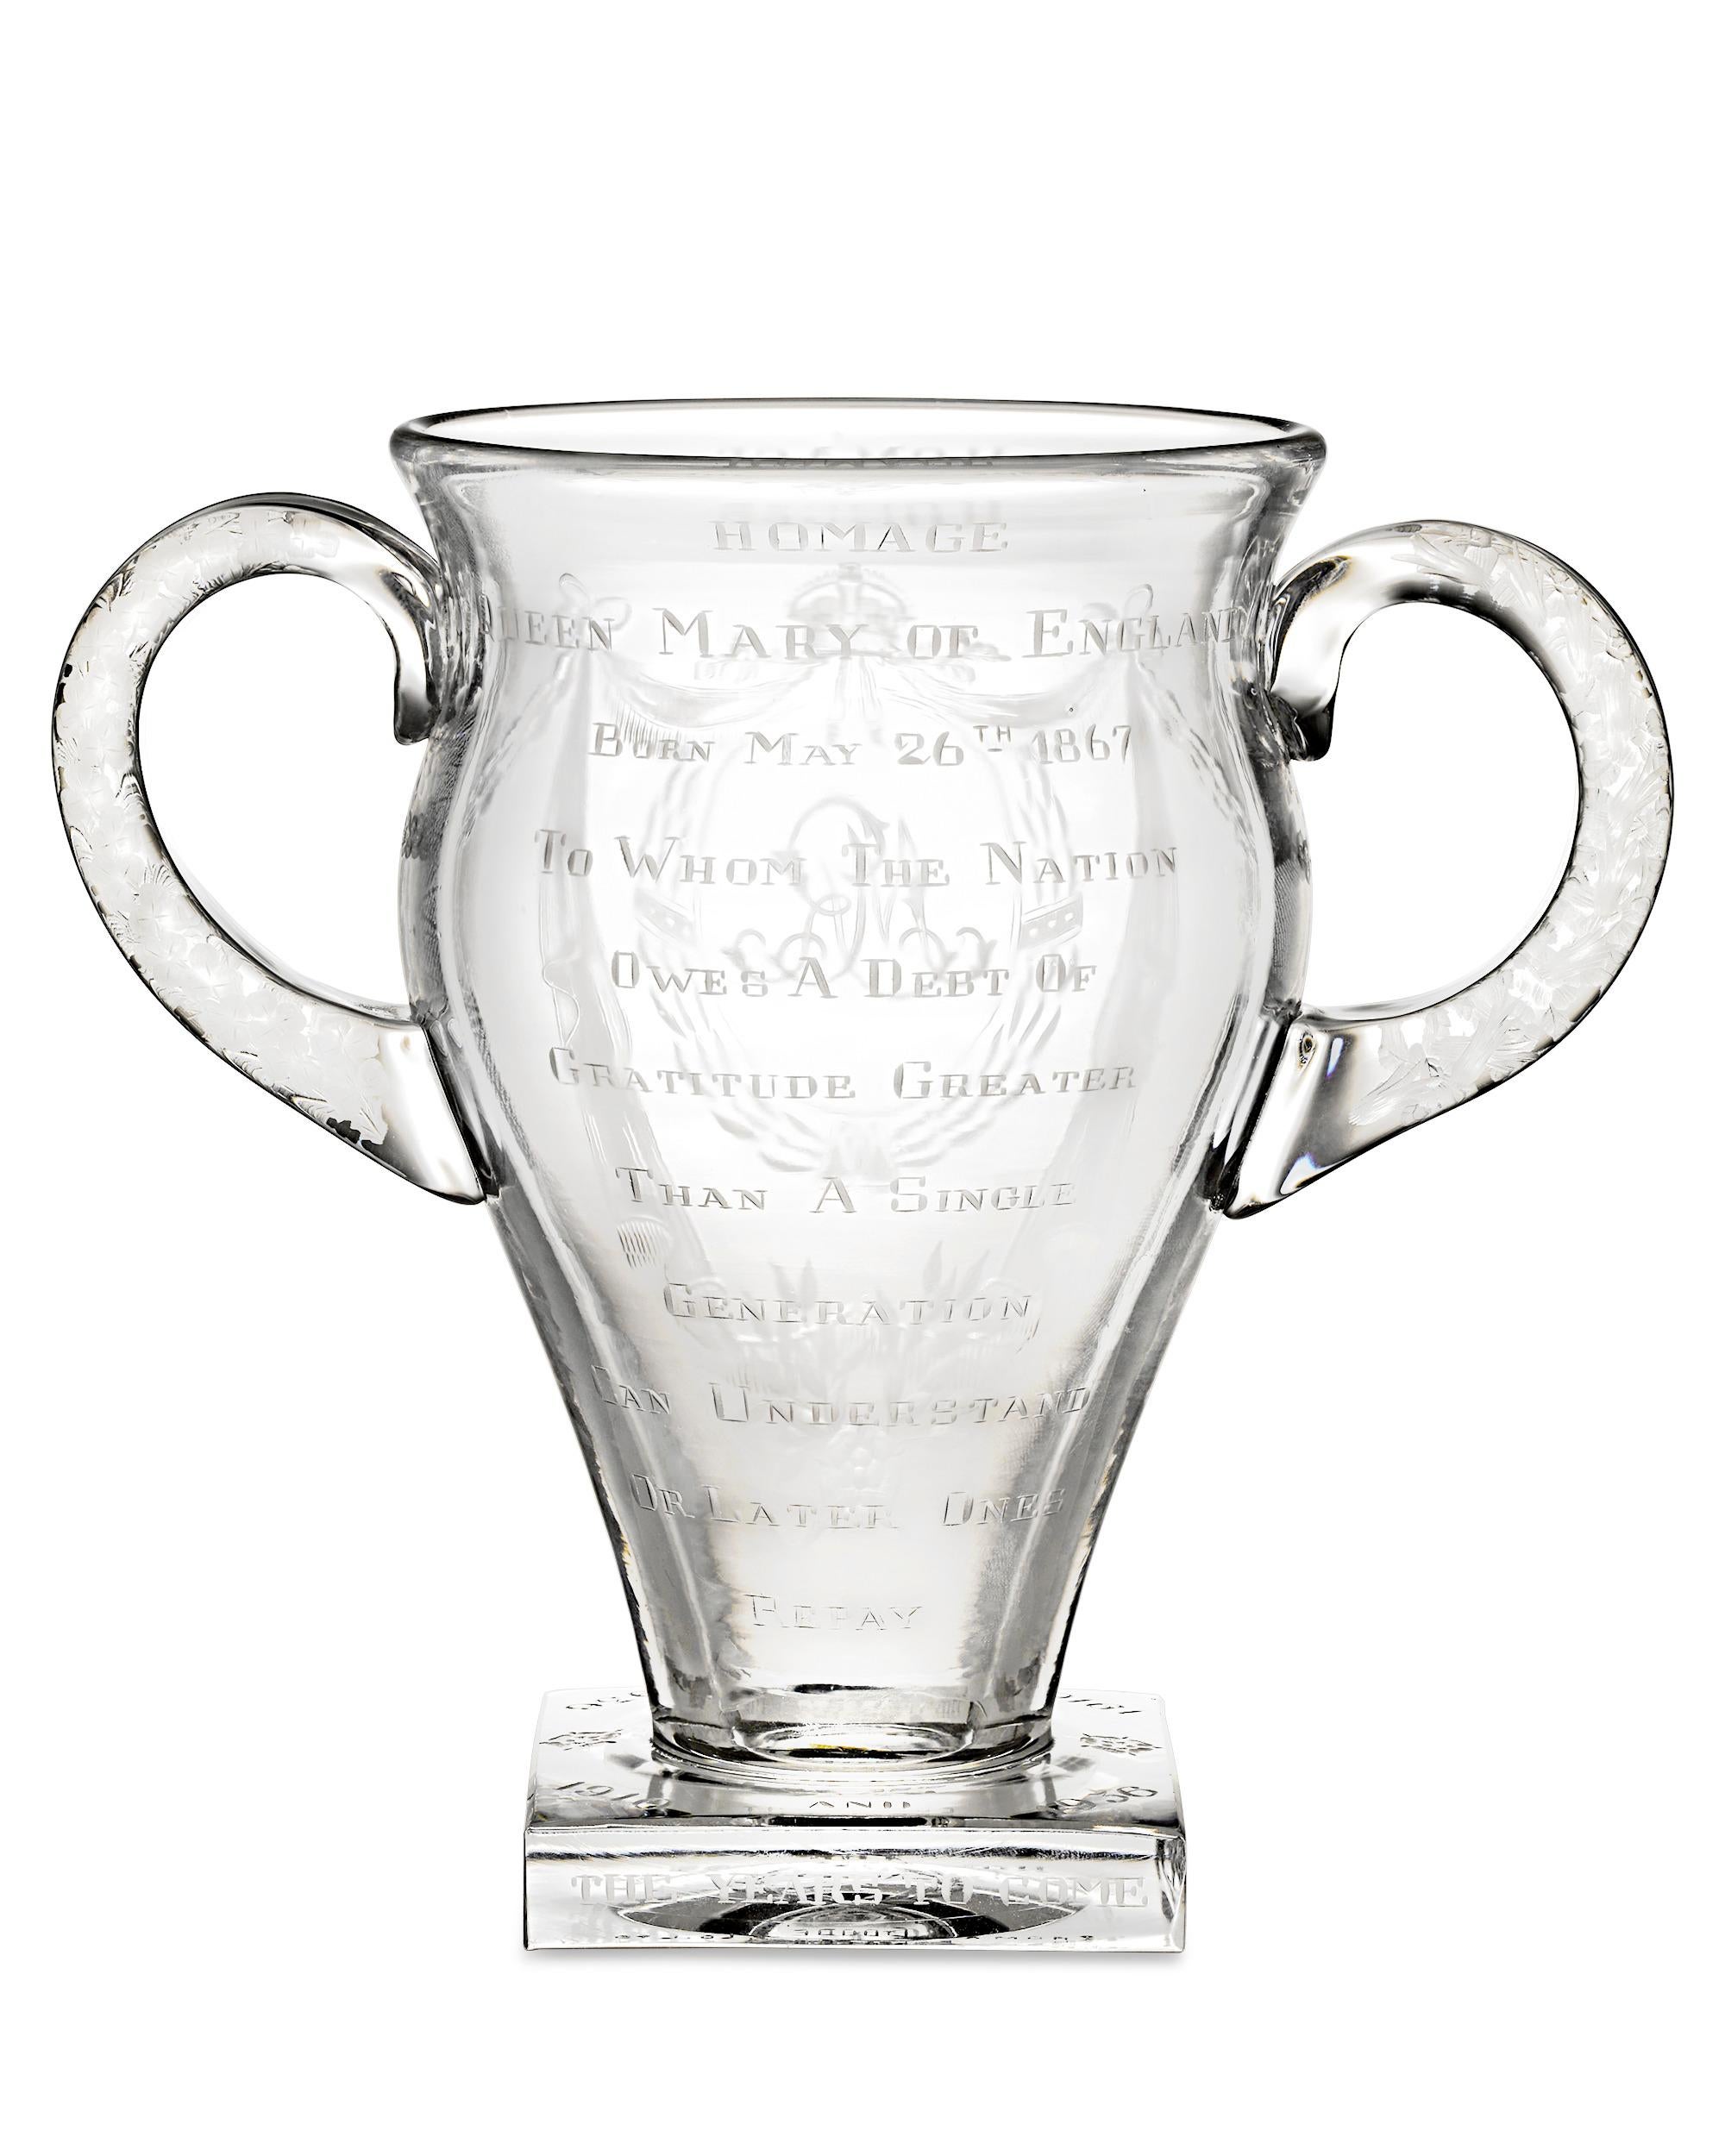 Ce remarquable vase en verre gravé en édition limitée rend hommage à la reine Marie de Teck, reine consort de Grande-Bretagne de 1910 à 1937. Elle a régné avec son mari, le roi George V, pendant une période de grands changements pour le pays et a